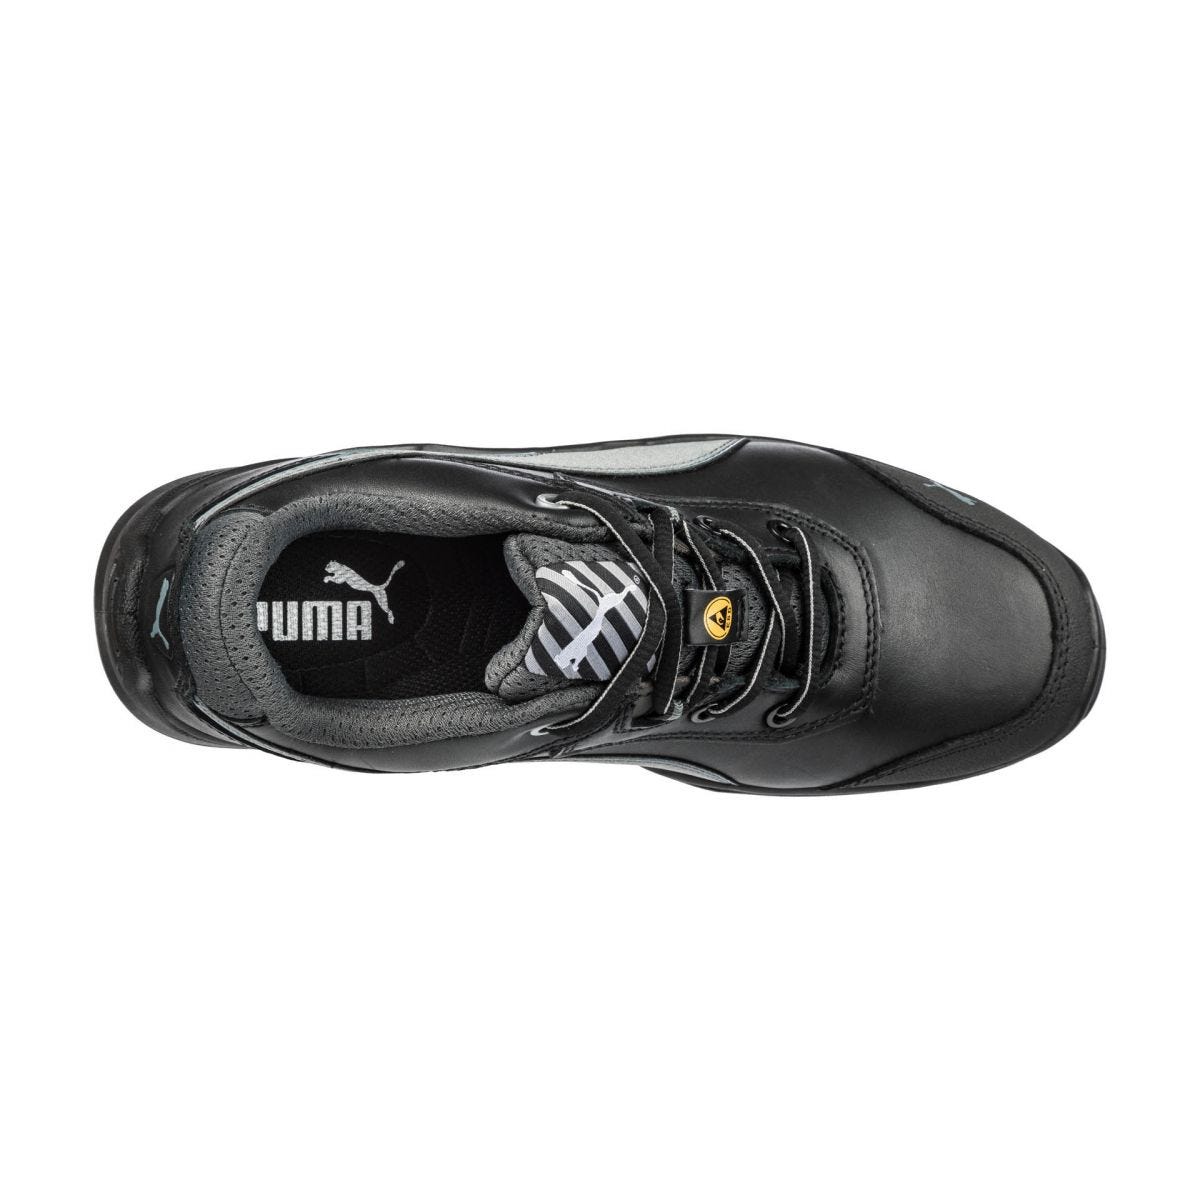 Chaussures de sécurité Argon RX low S3 ESD SRC noir - Puma - Taille 46 3